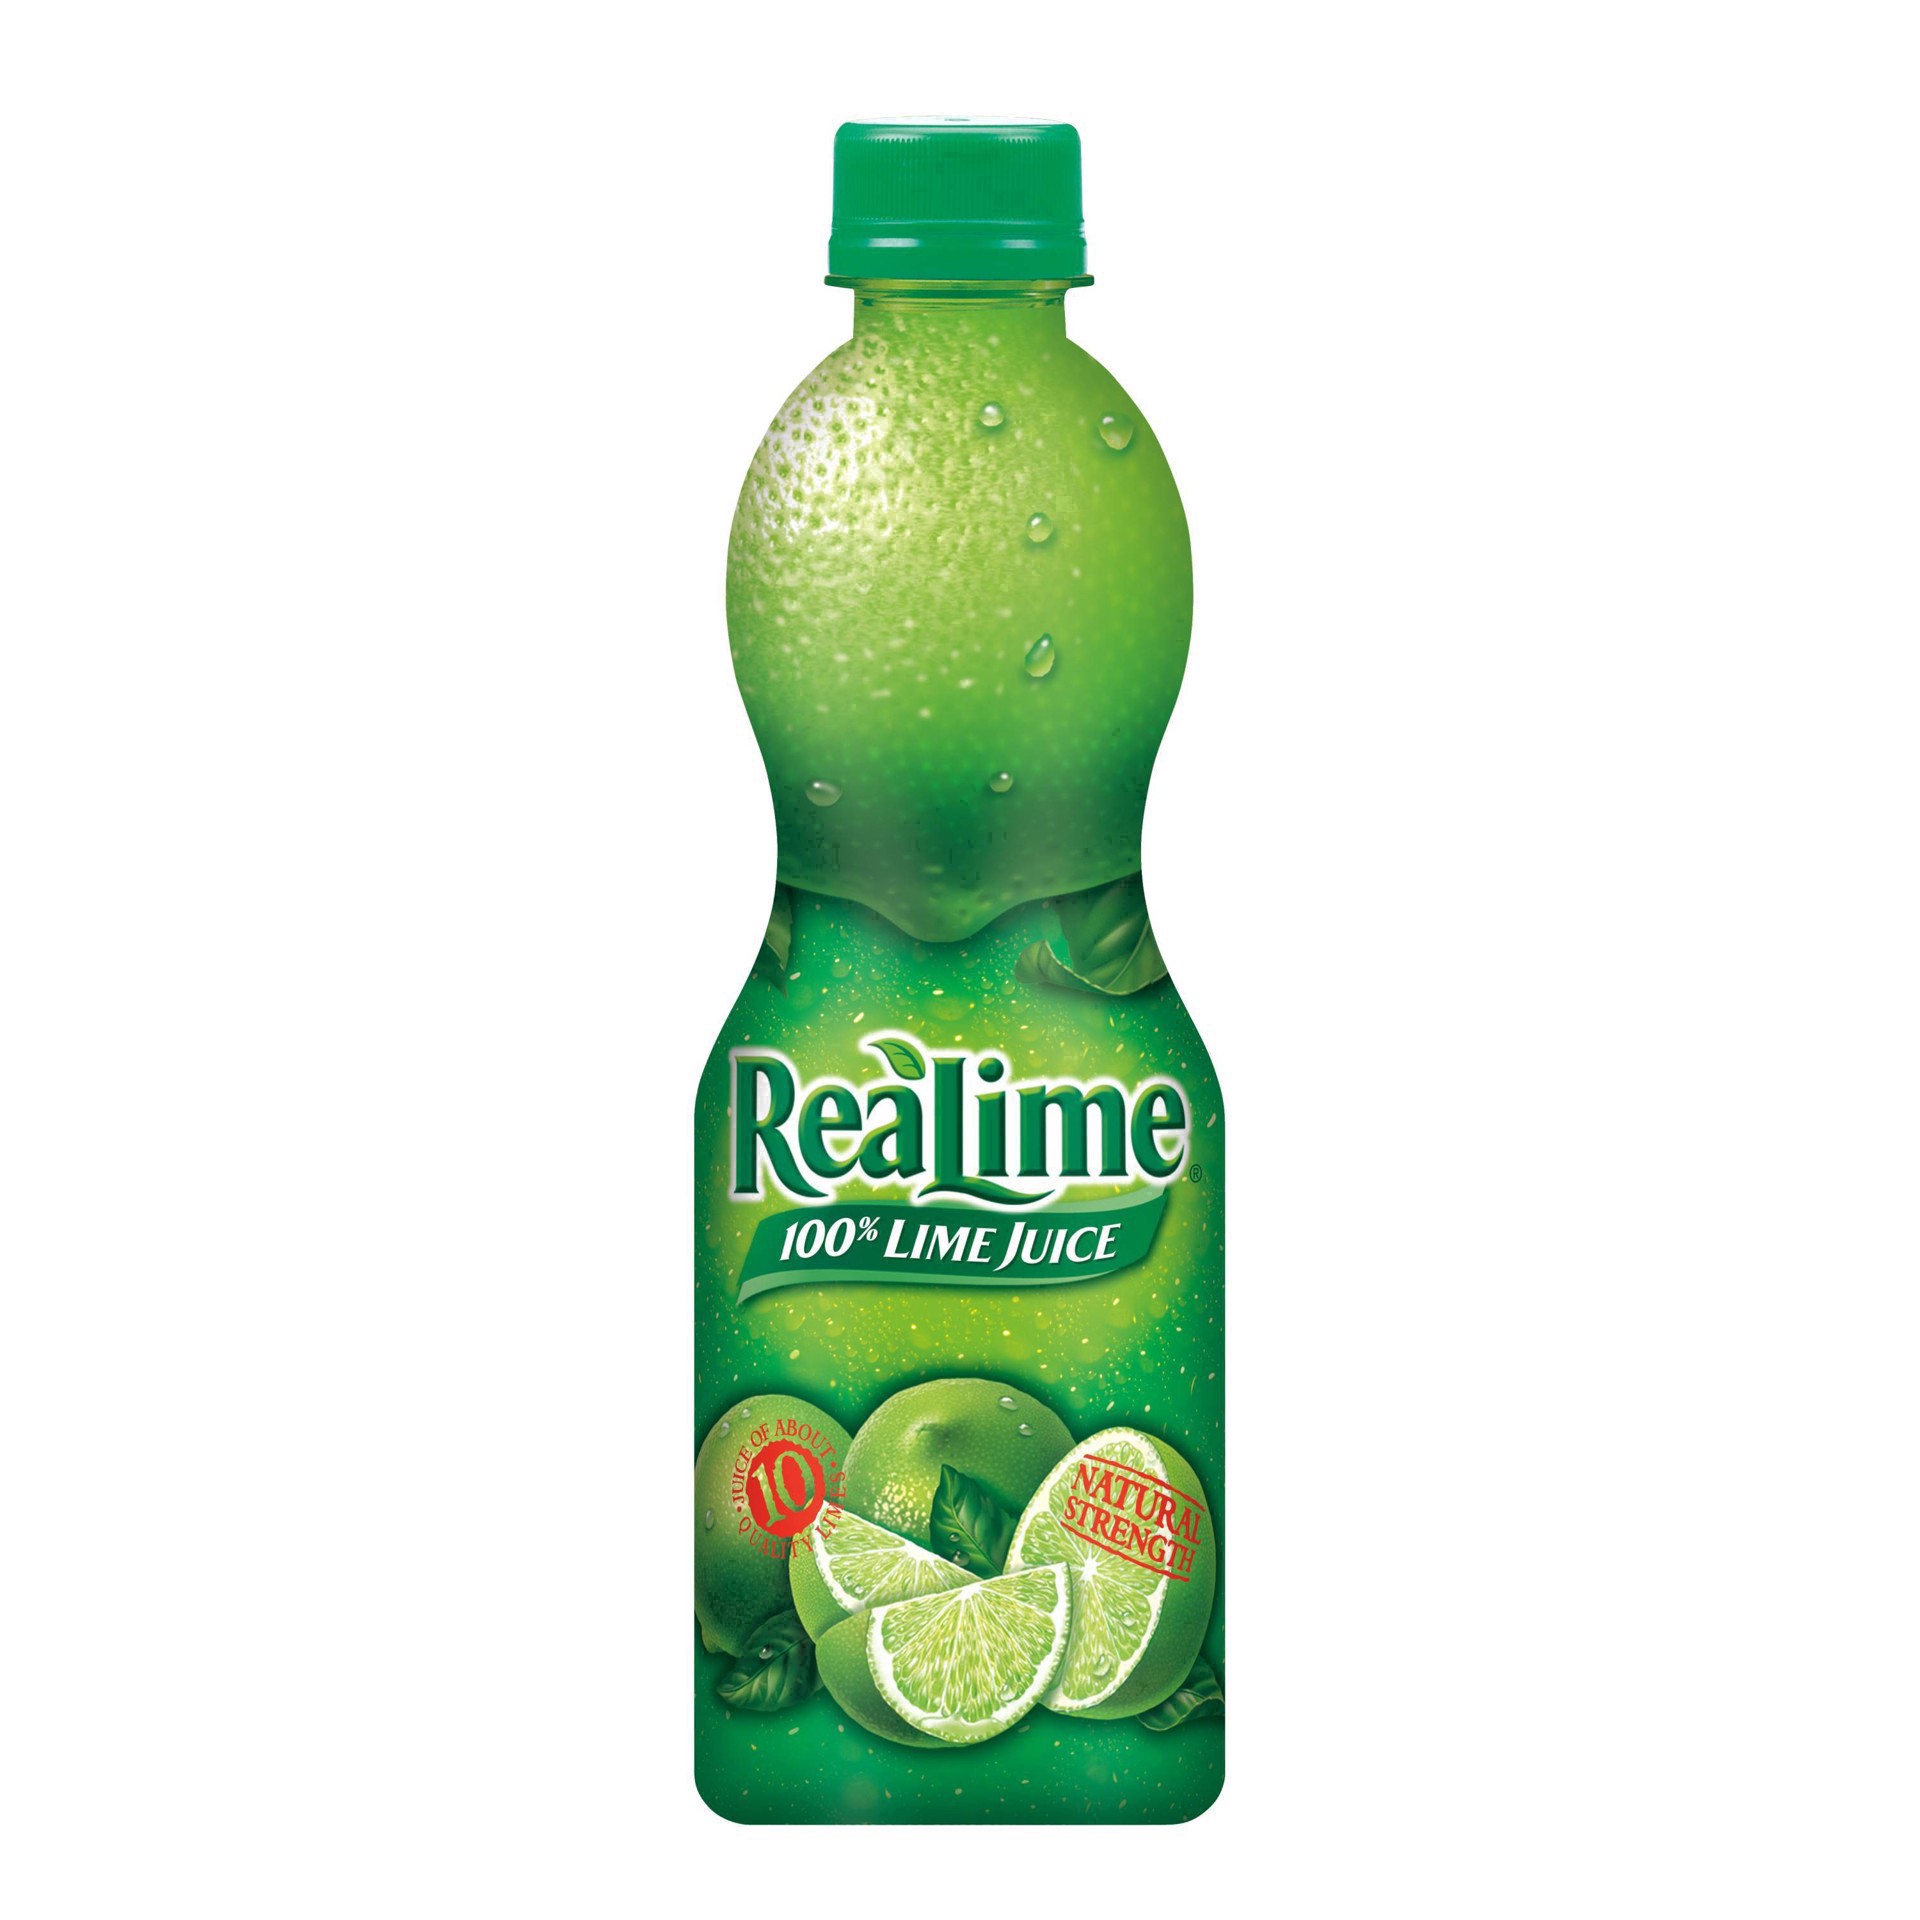 slide 19 of 68, ReaLime 100% Lime Juice Bottle, 15 fl oz